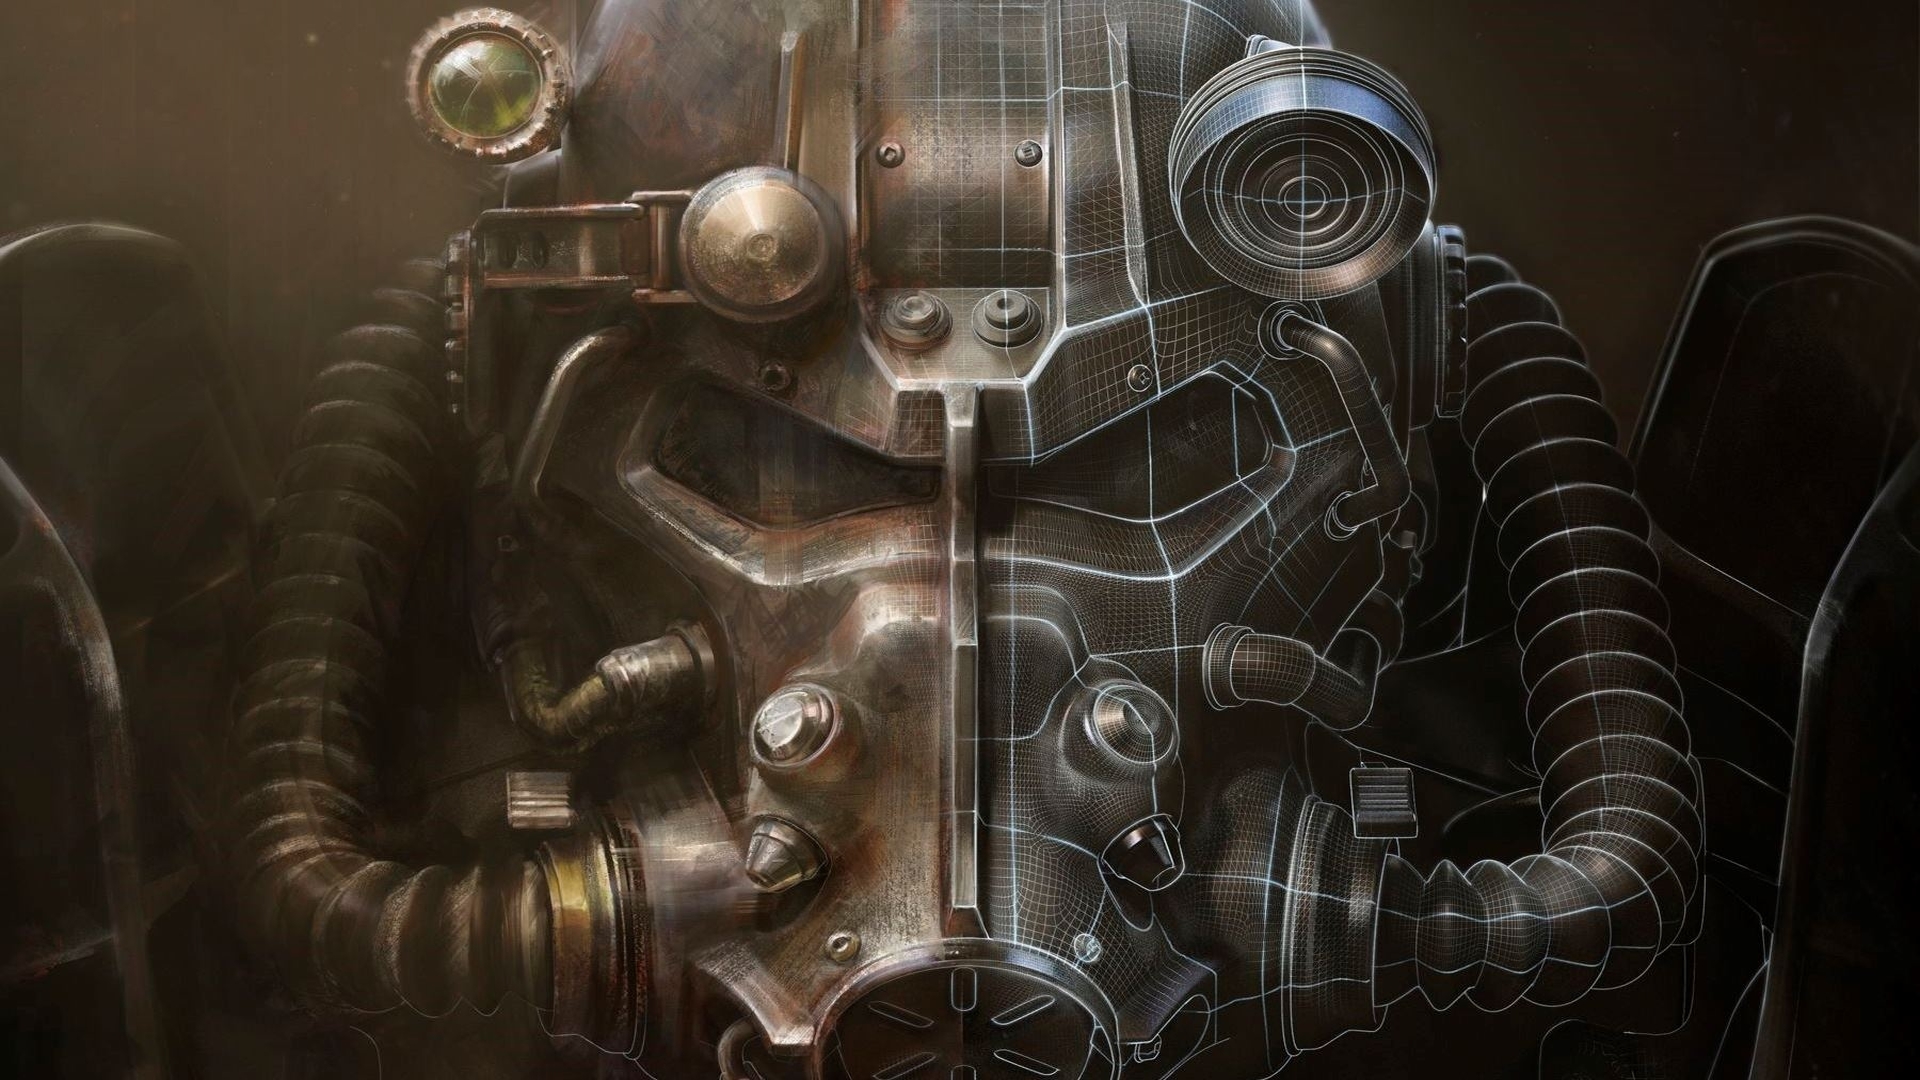 Fallout 4 bethesda game studios bethesda softworks power armor